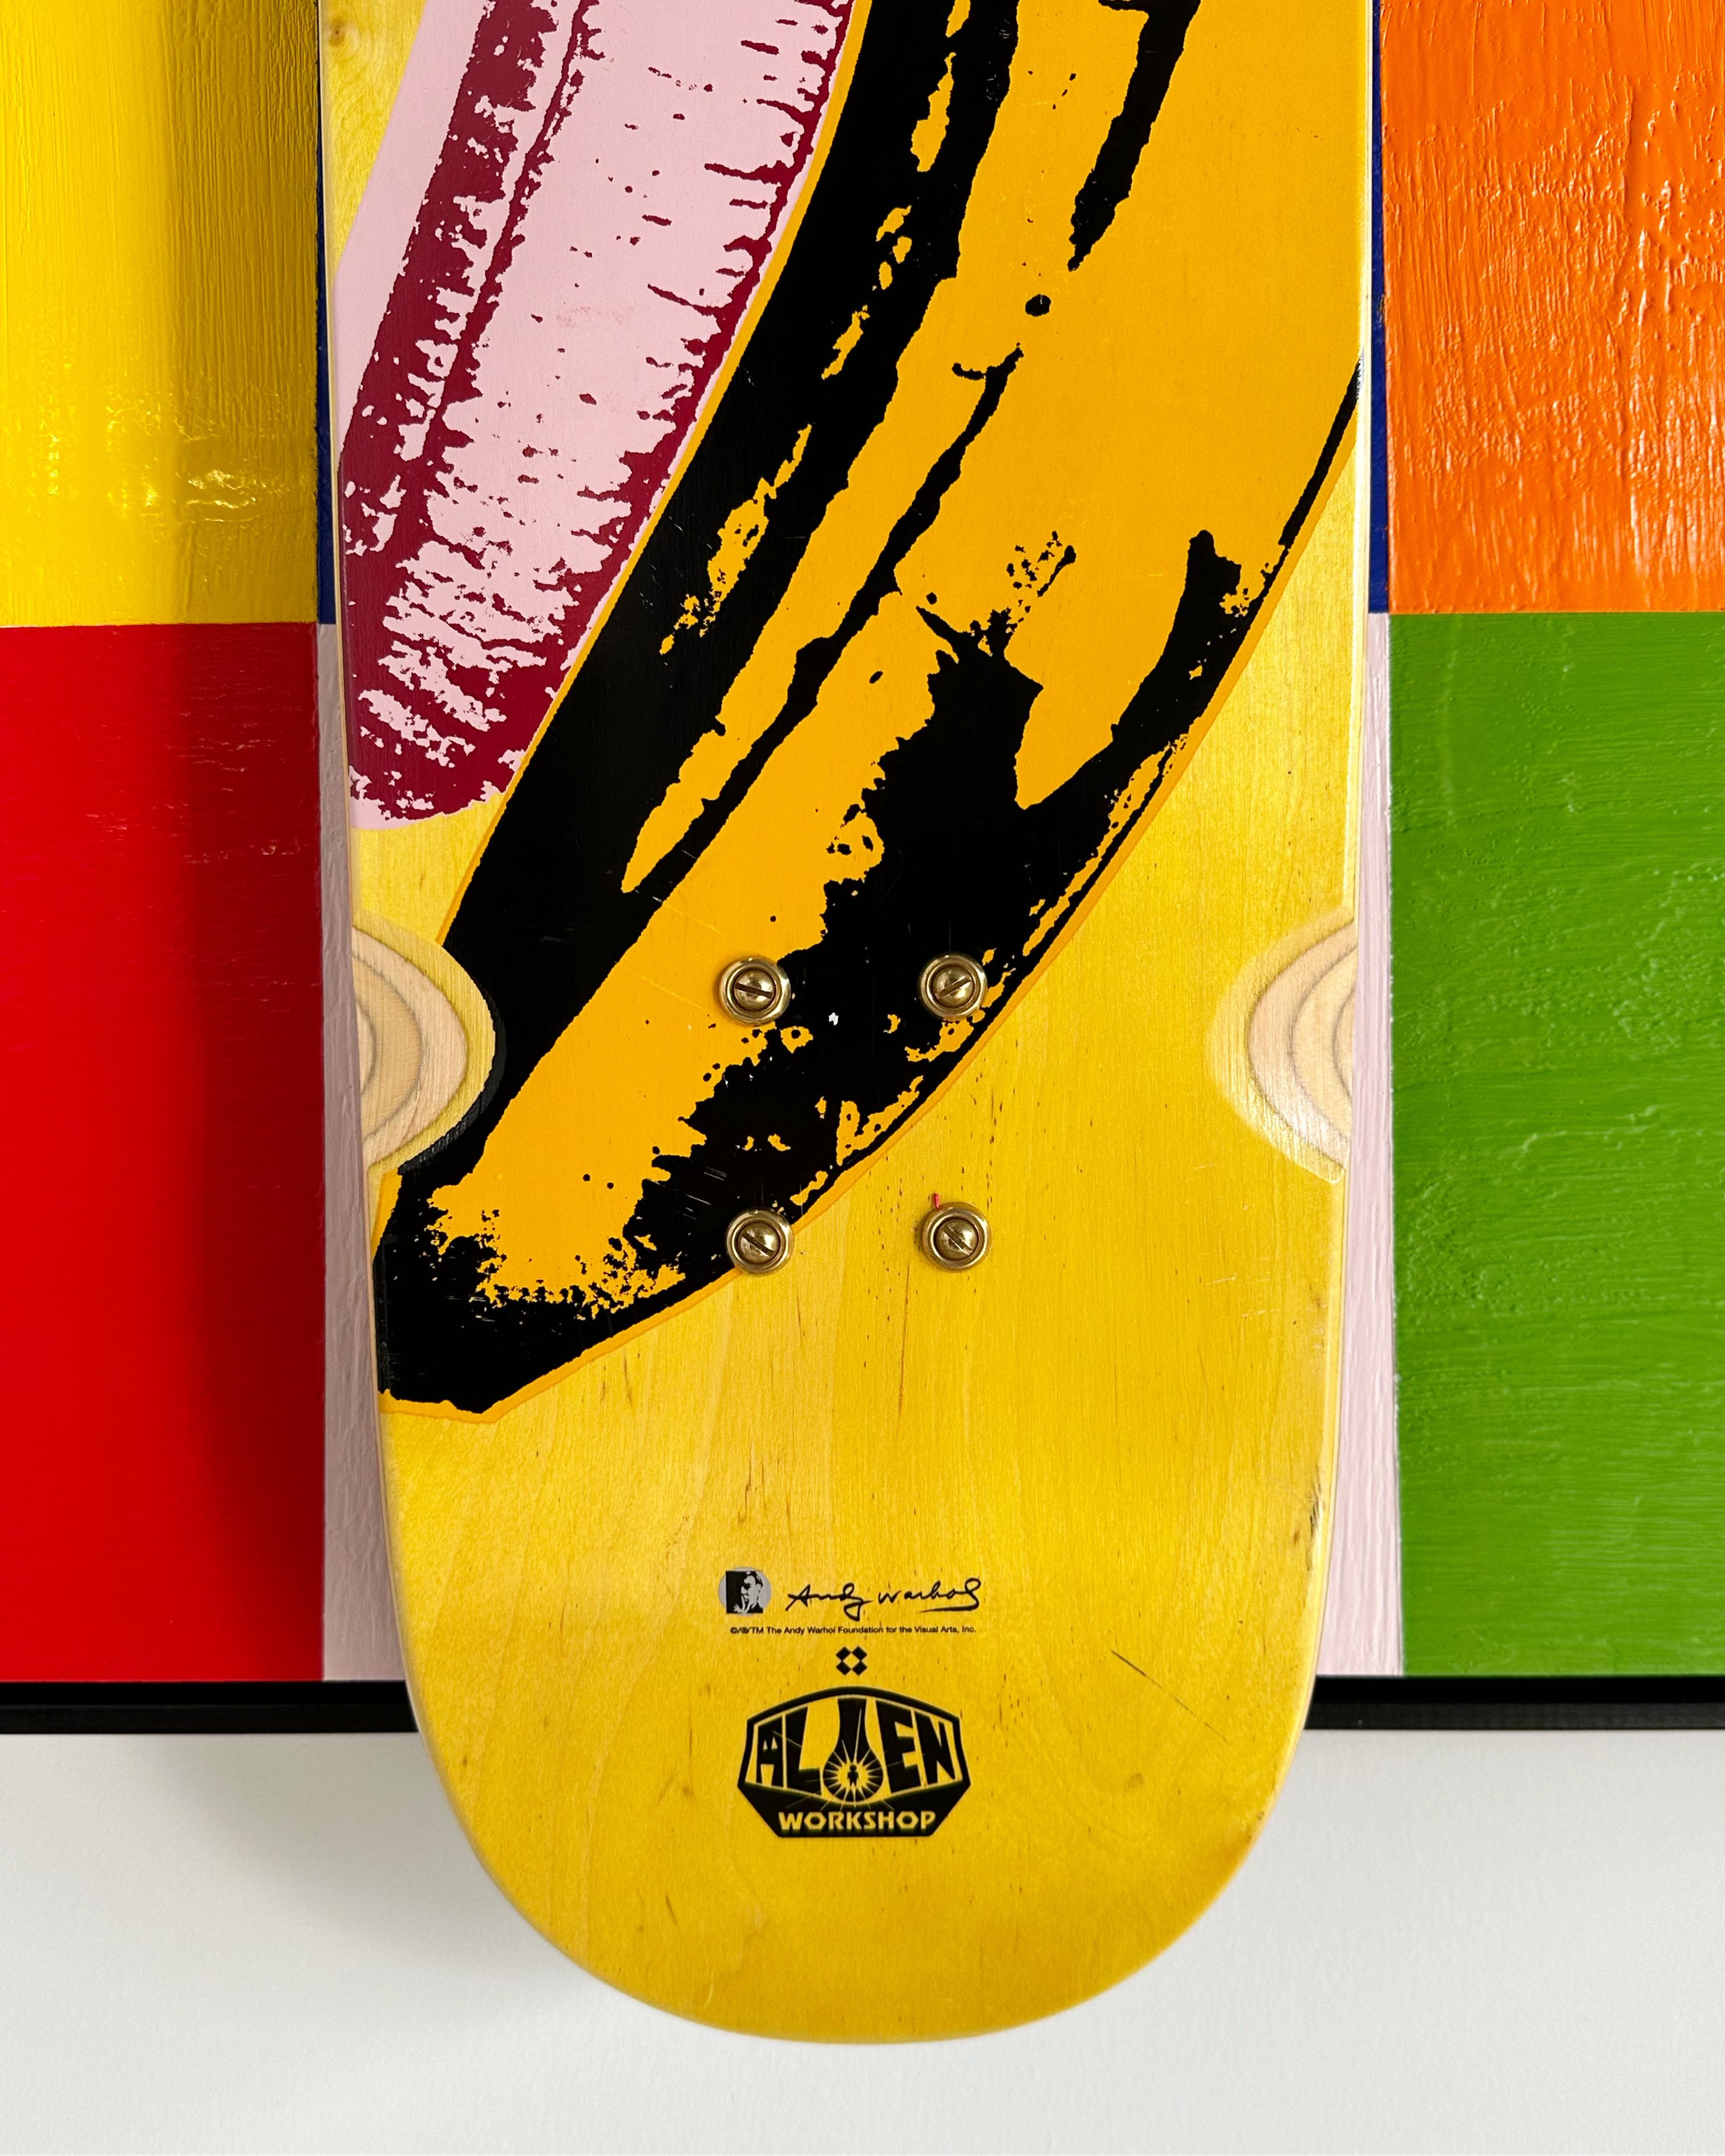 In der Serie Deck. Encaustic und Andy Warhol Foundation x Alien Workshop Skate Deck schwimmend auf Karton montiert.

Kunst Abmessungen: 30 x 30 H Zoll und gerahmt Abmessungen: 31 W x 31 H Zoll. 

Über das Deck  Seltenes, vergriffenes Andy Warhol